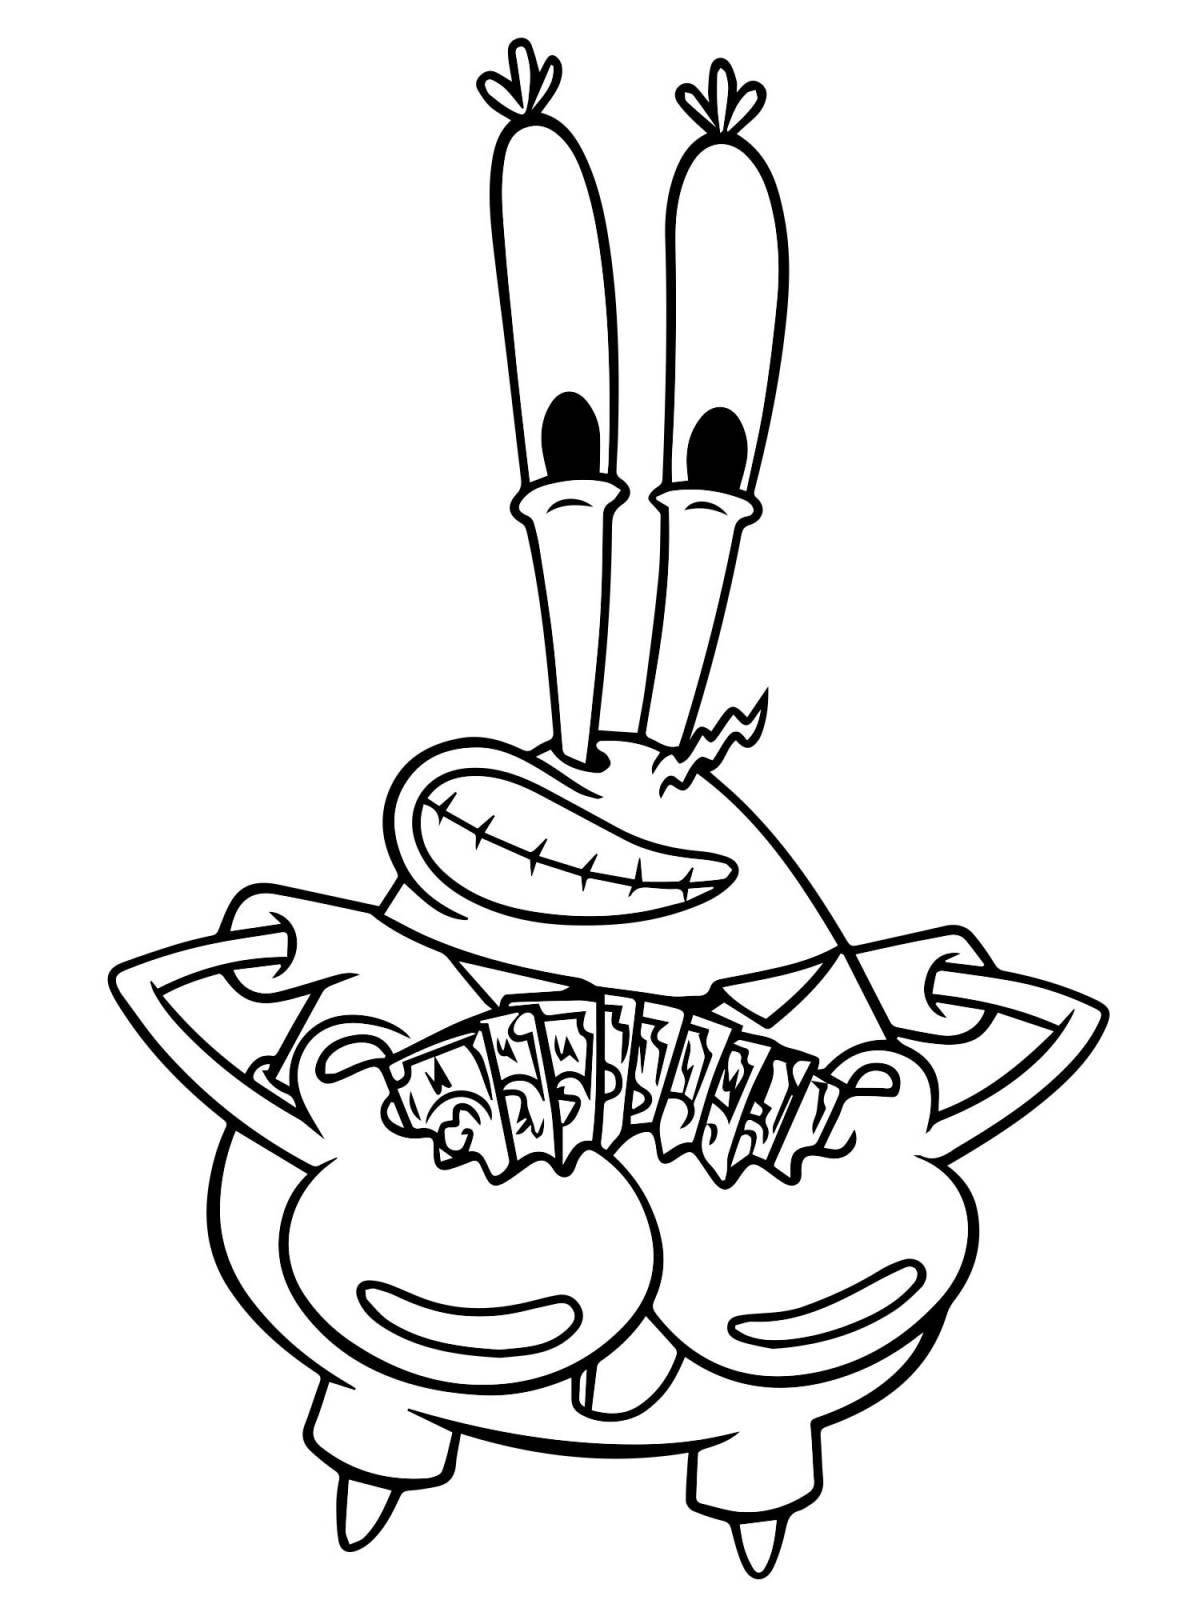 Sweet Krusty Krab coloring page